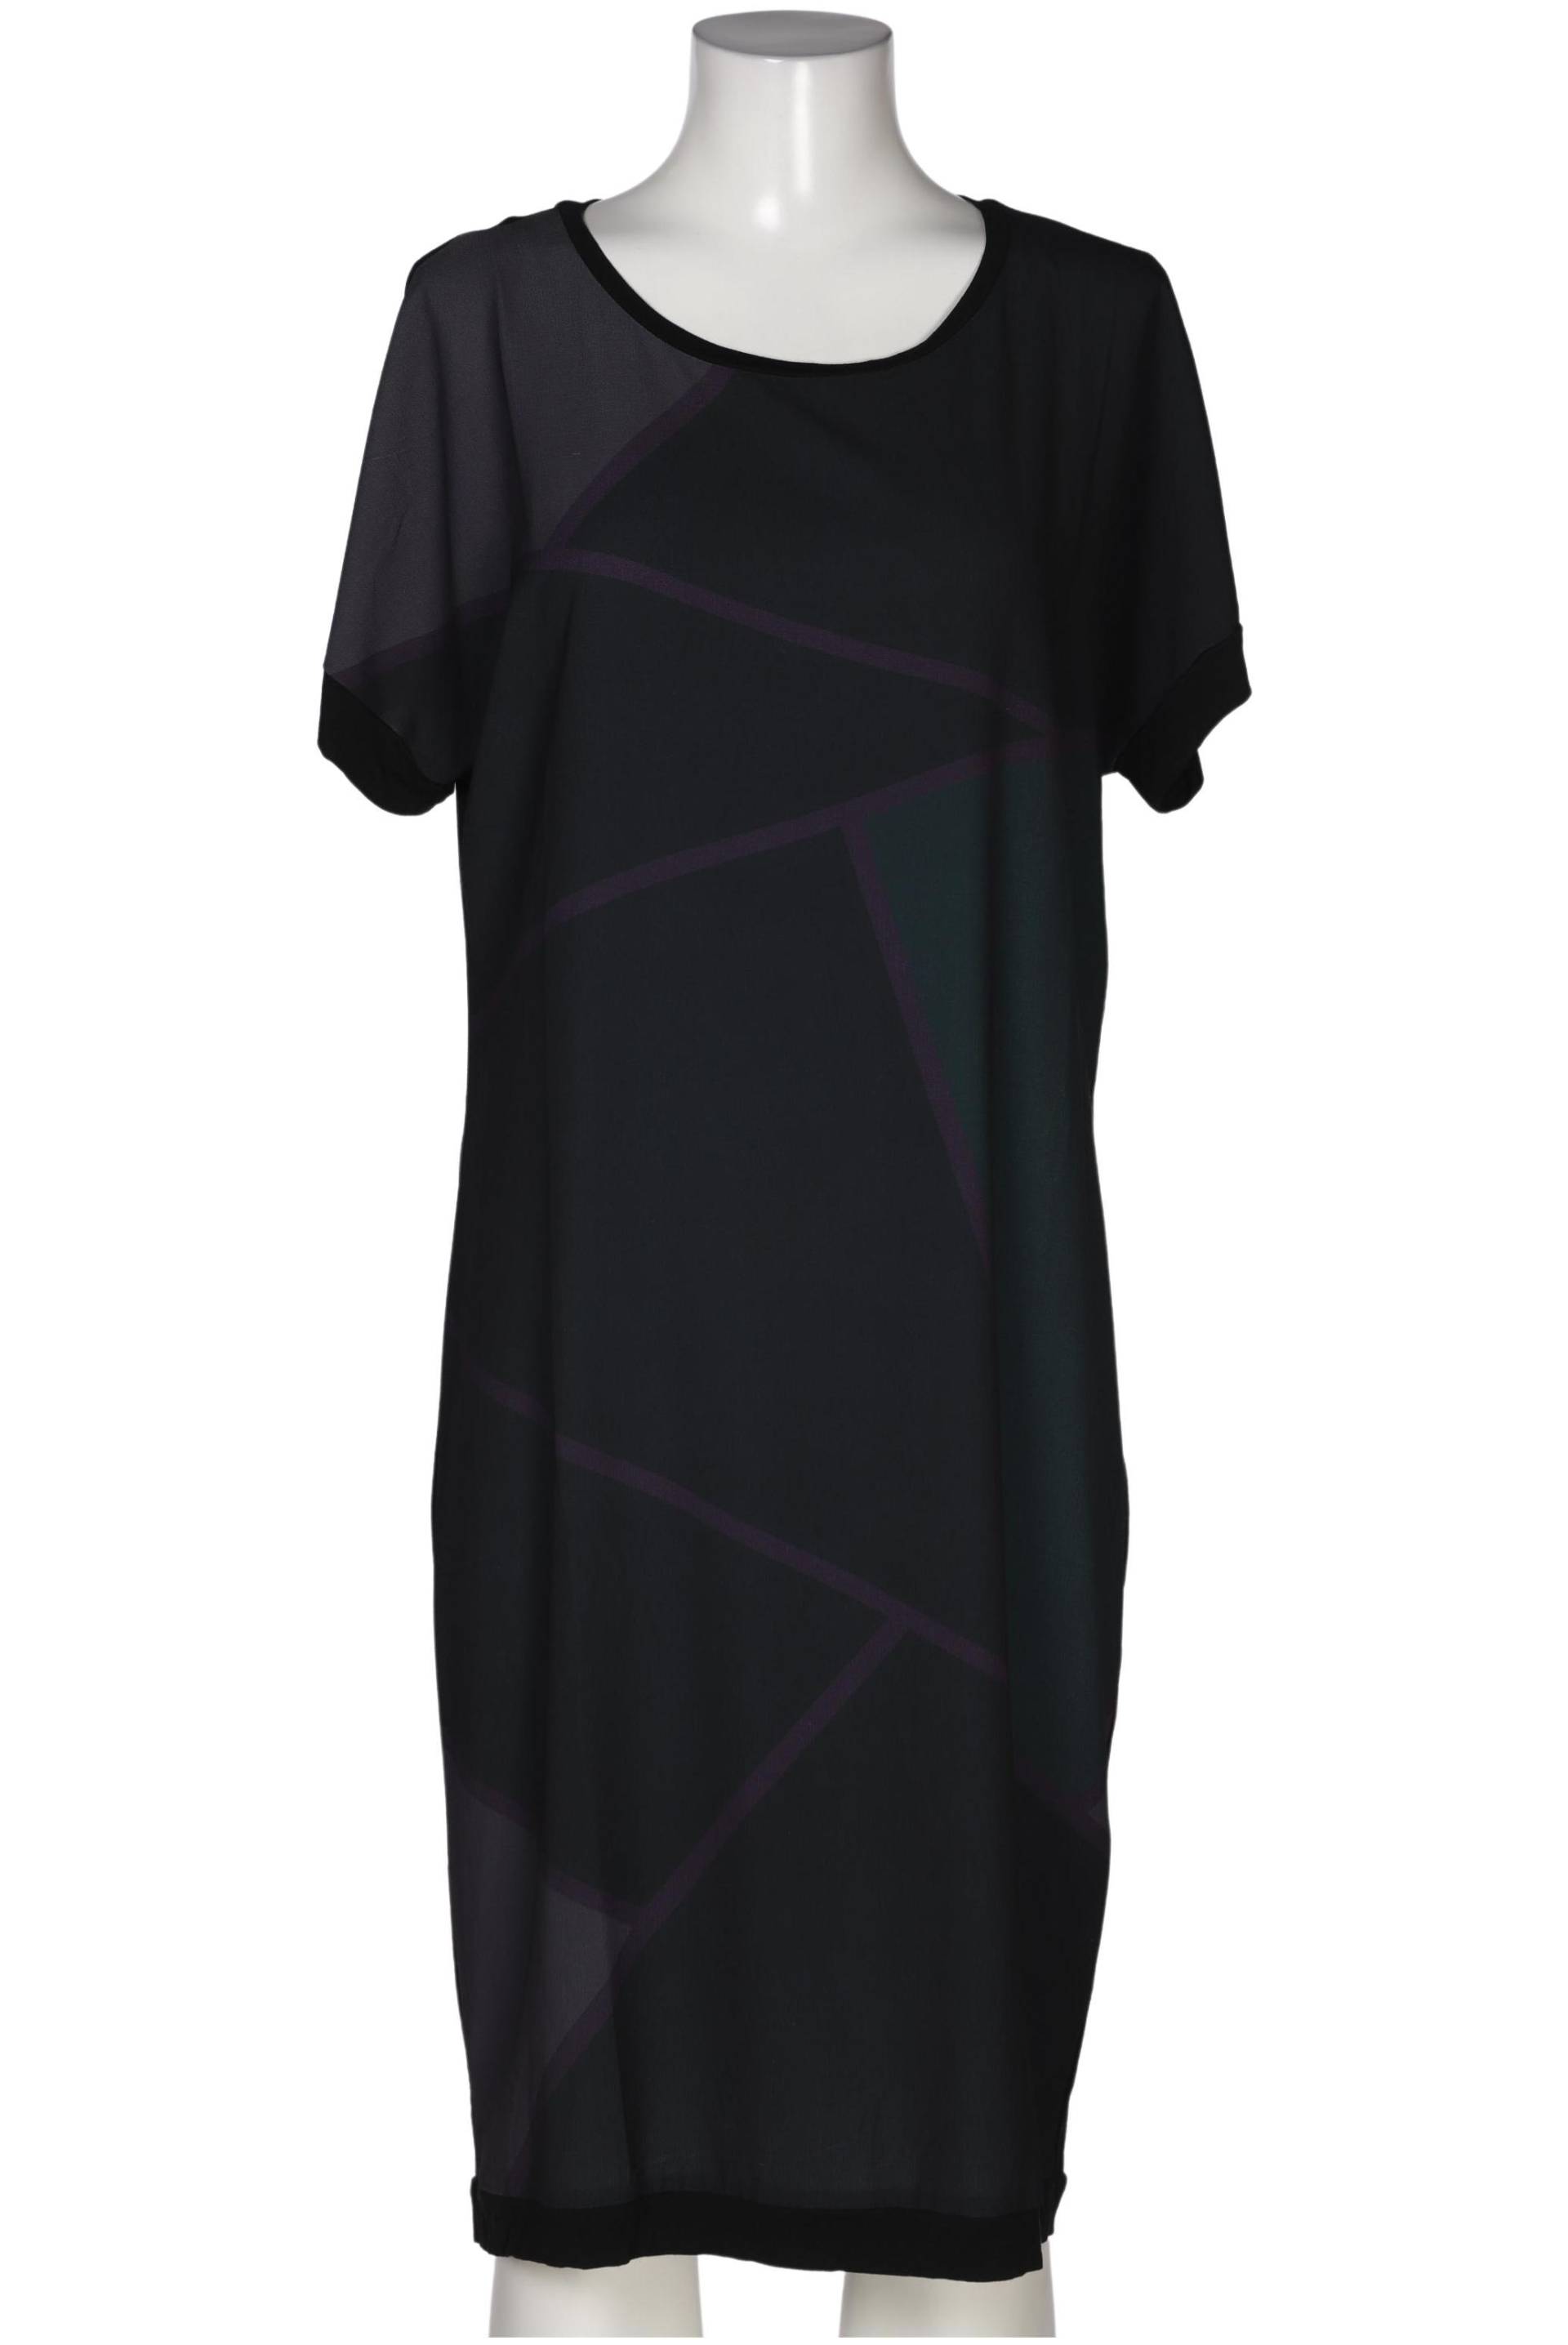 Egu Damen Kleid, schwarz, Gr. 84 von Egu